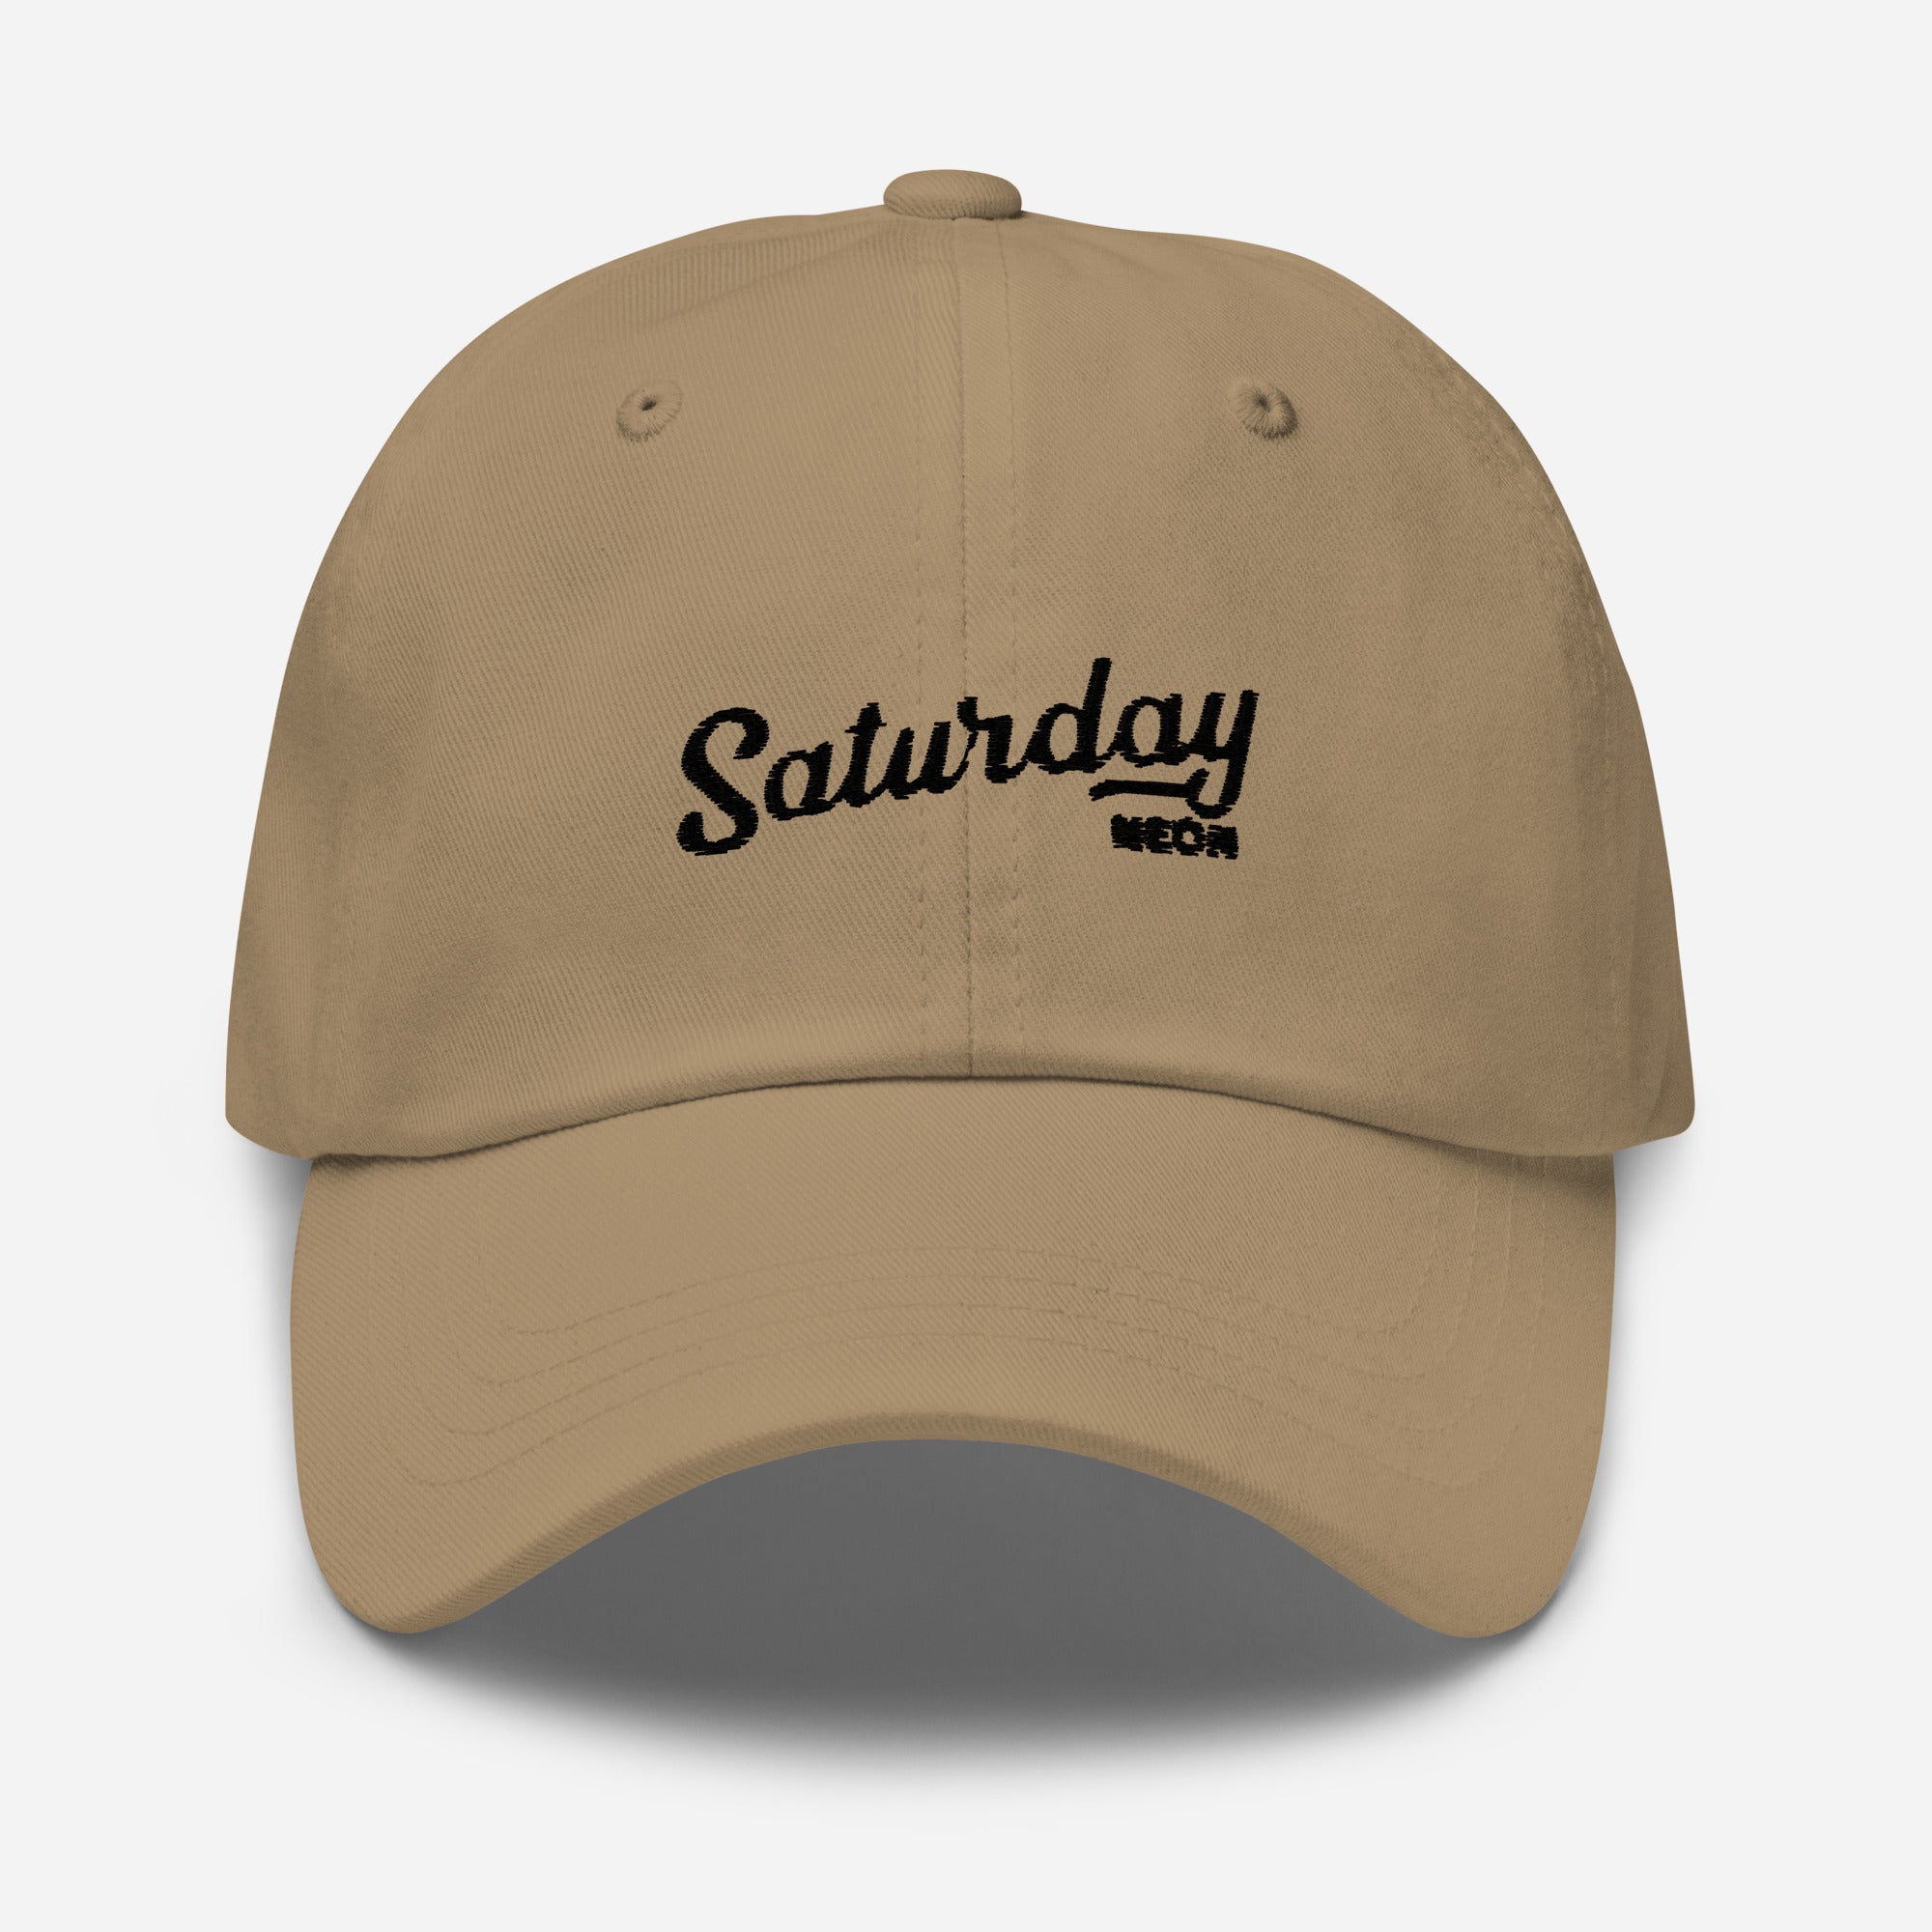 Saturday Neon Dad Hat - Saturday Neon